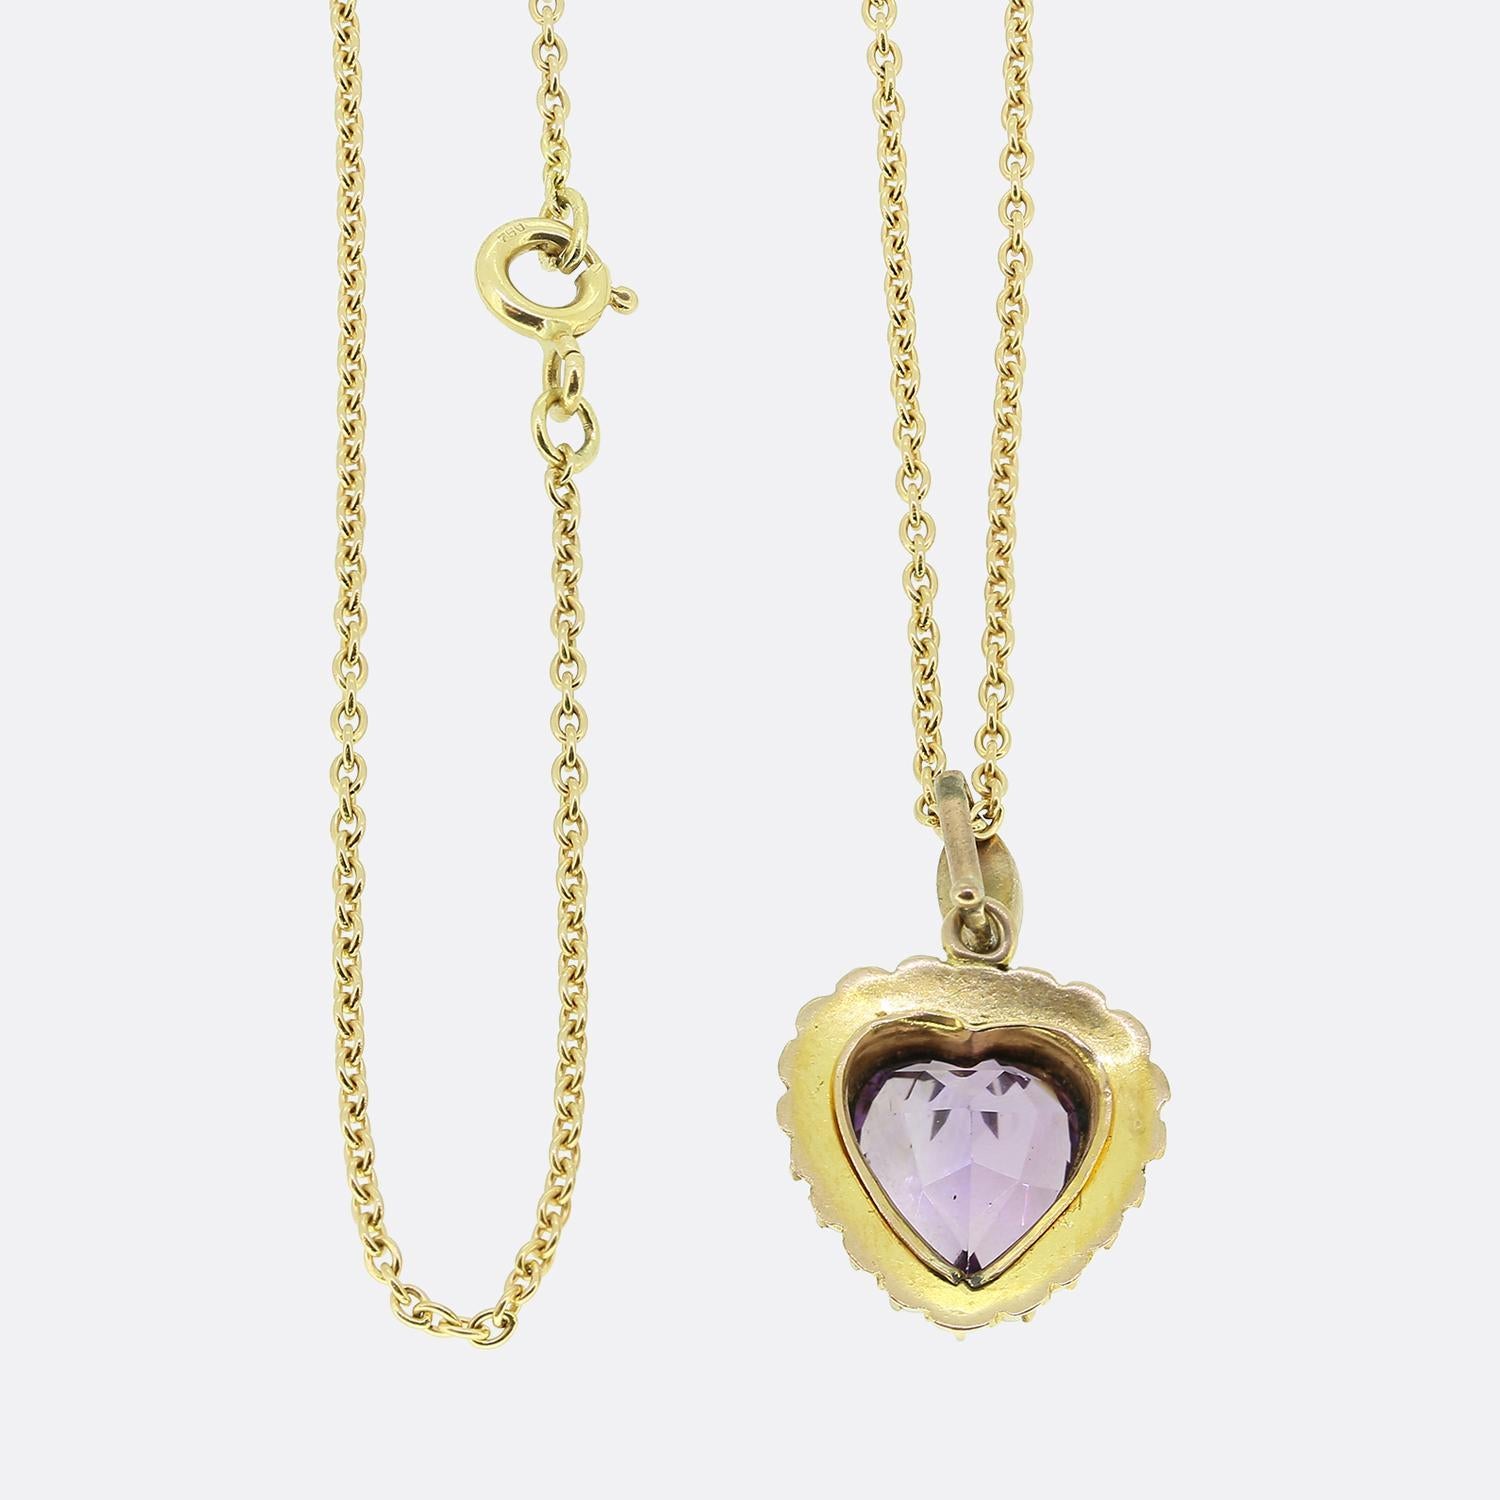 Nous avons ici un magnifique collier à pendentifs en améthyste et perles. Ce pendentif antique met en valeur une améthyste en forme de cœur soigneusement travaillée, d'une étonnante couleur violette. Cette pierre précieuse est ensuite encadrée par